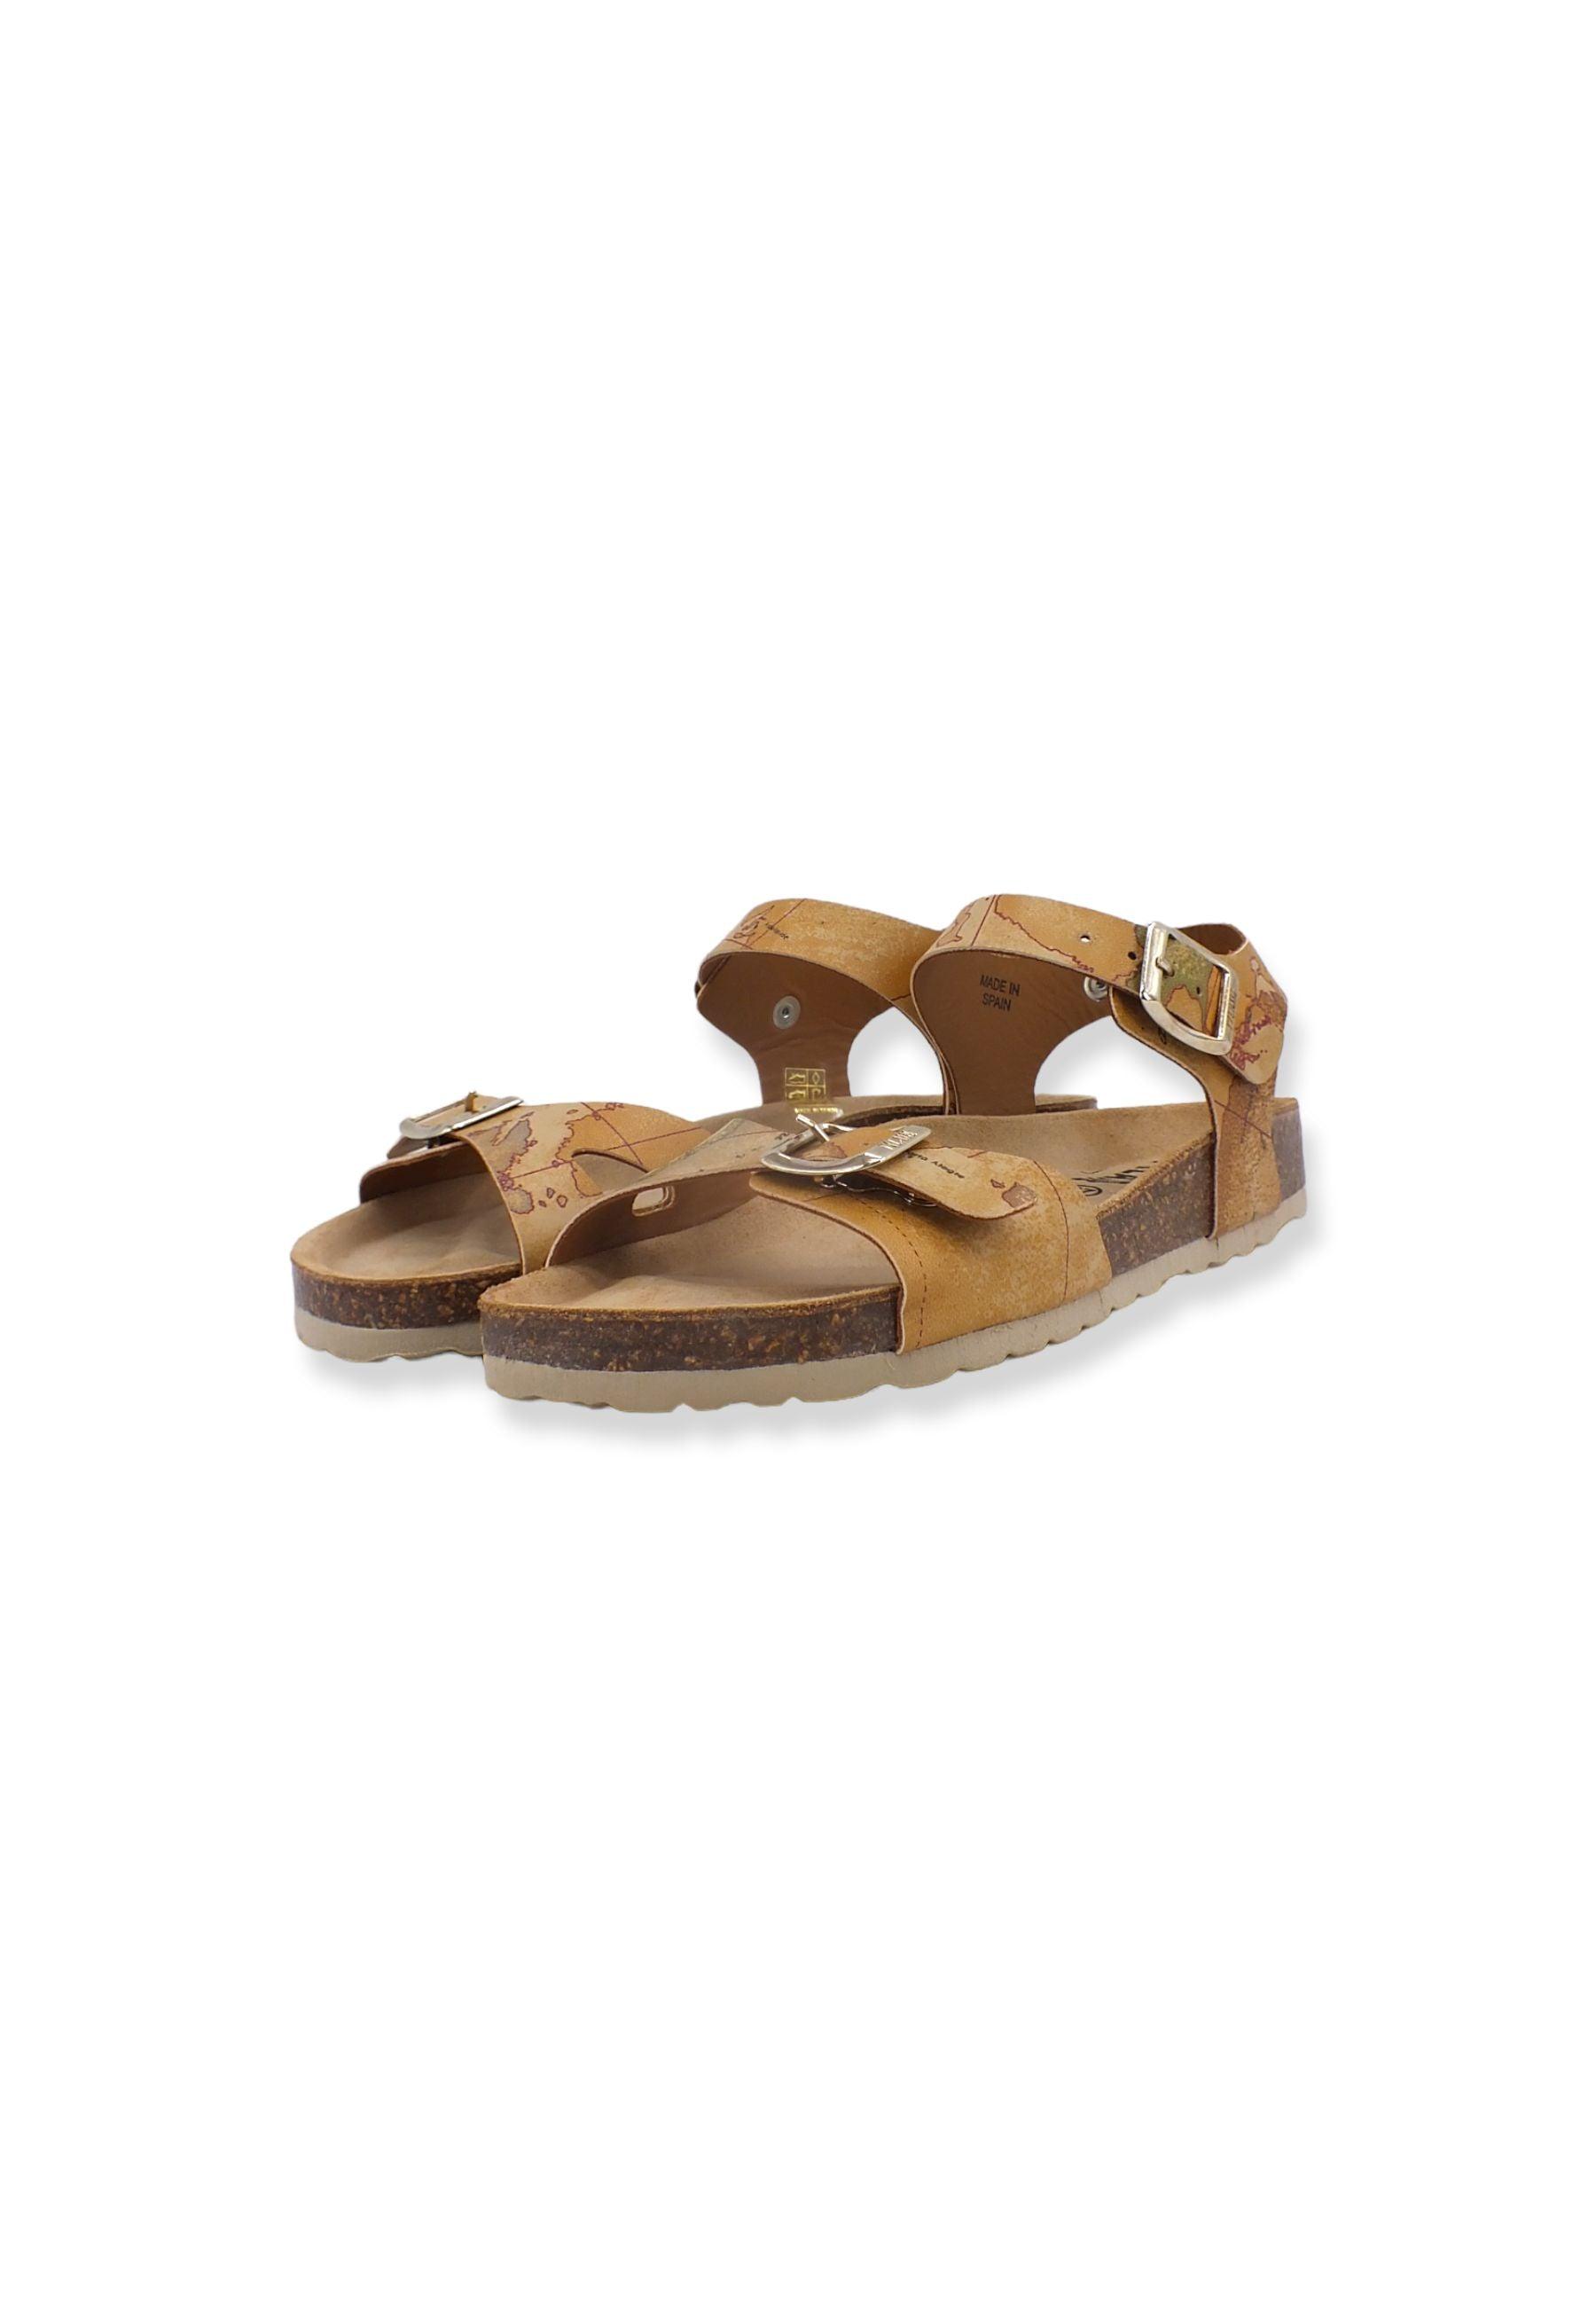 ALVIERO MARTINI 1° CLASSE Sandalo Fibbie Donna Beige Natural 0278-9750 - Sandrini Calzature e Abbigliamento